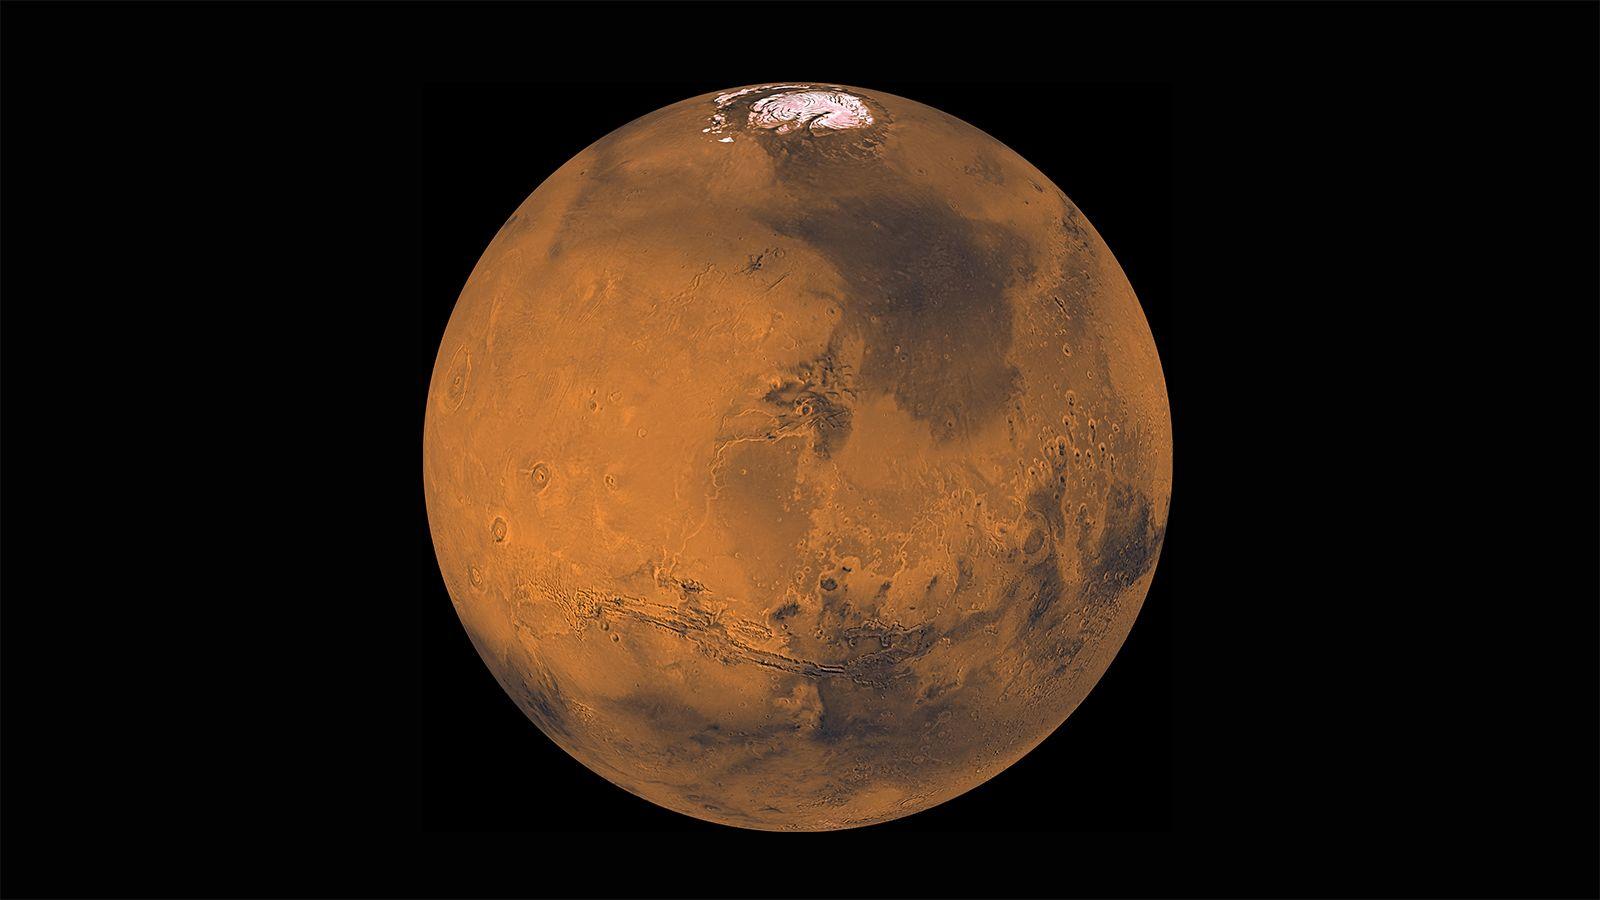 NASA Mars Logo - News | Mars Surveyor 2001 Seeks Eye-Catching Logo Design